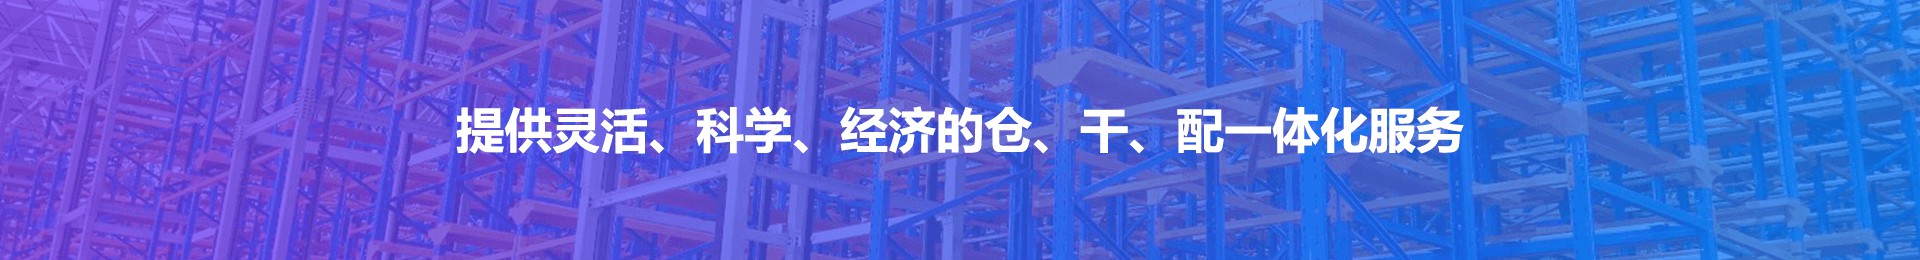 云仓查询_Yuanfu Logistics Group Co.,Ltd.—Serving our customer to focus on core business,win-win on the supply chain【official website】